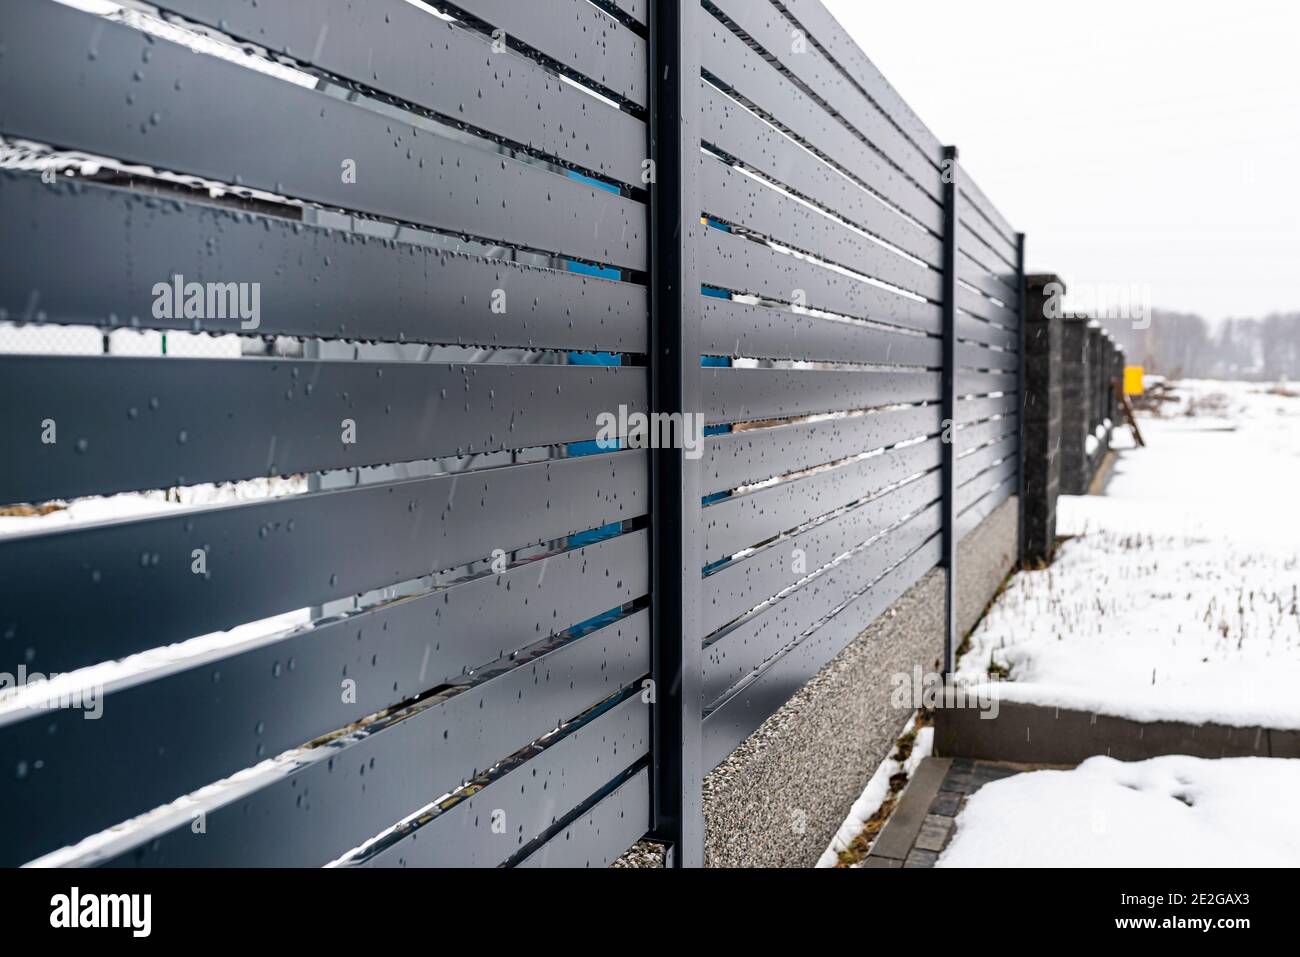 Moderna recinzione antracite, con un connettore di fondazione recinzione visibile, piove in inverno, sullo sfondo c'è neve che giace a terra. Foto Stock